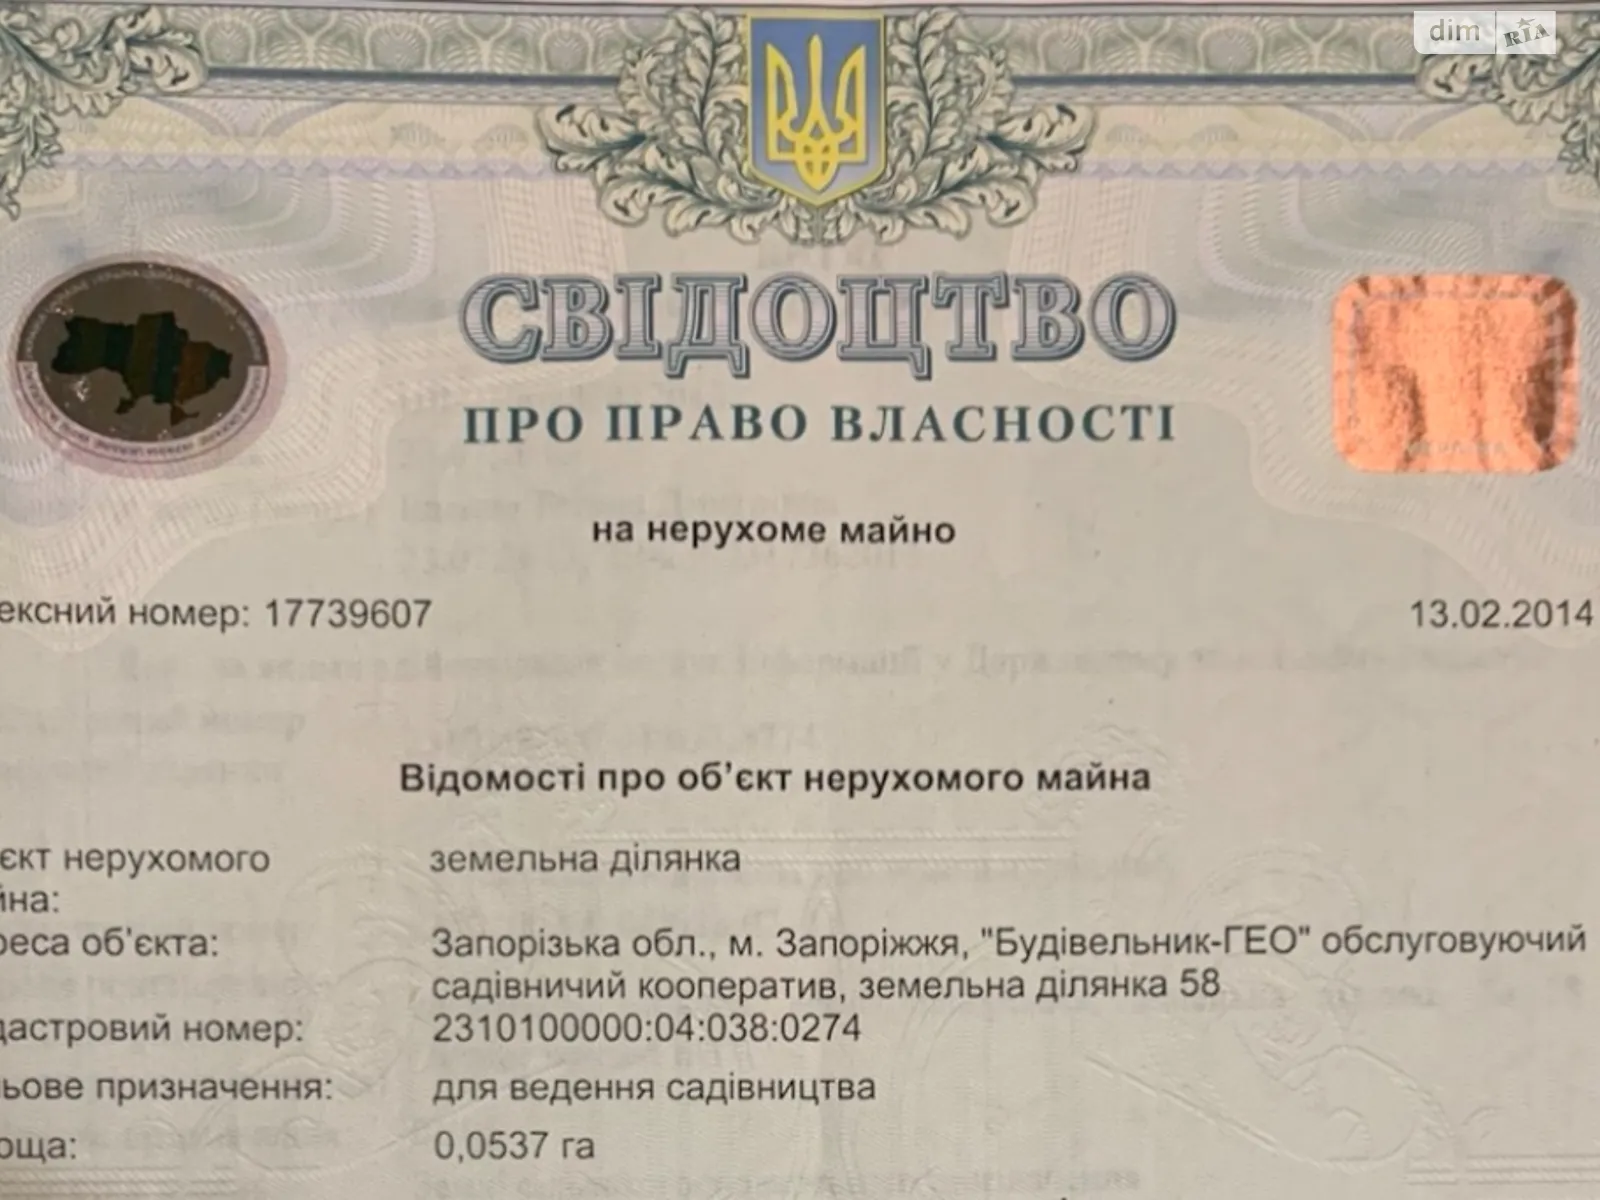 Сдается в аренду земельный участок 5.37 соток в Запорожской области, цена: 12000 грн